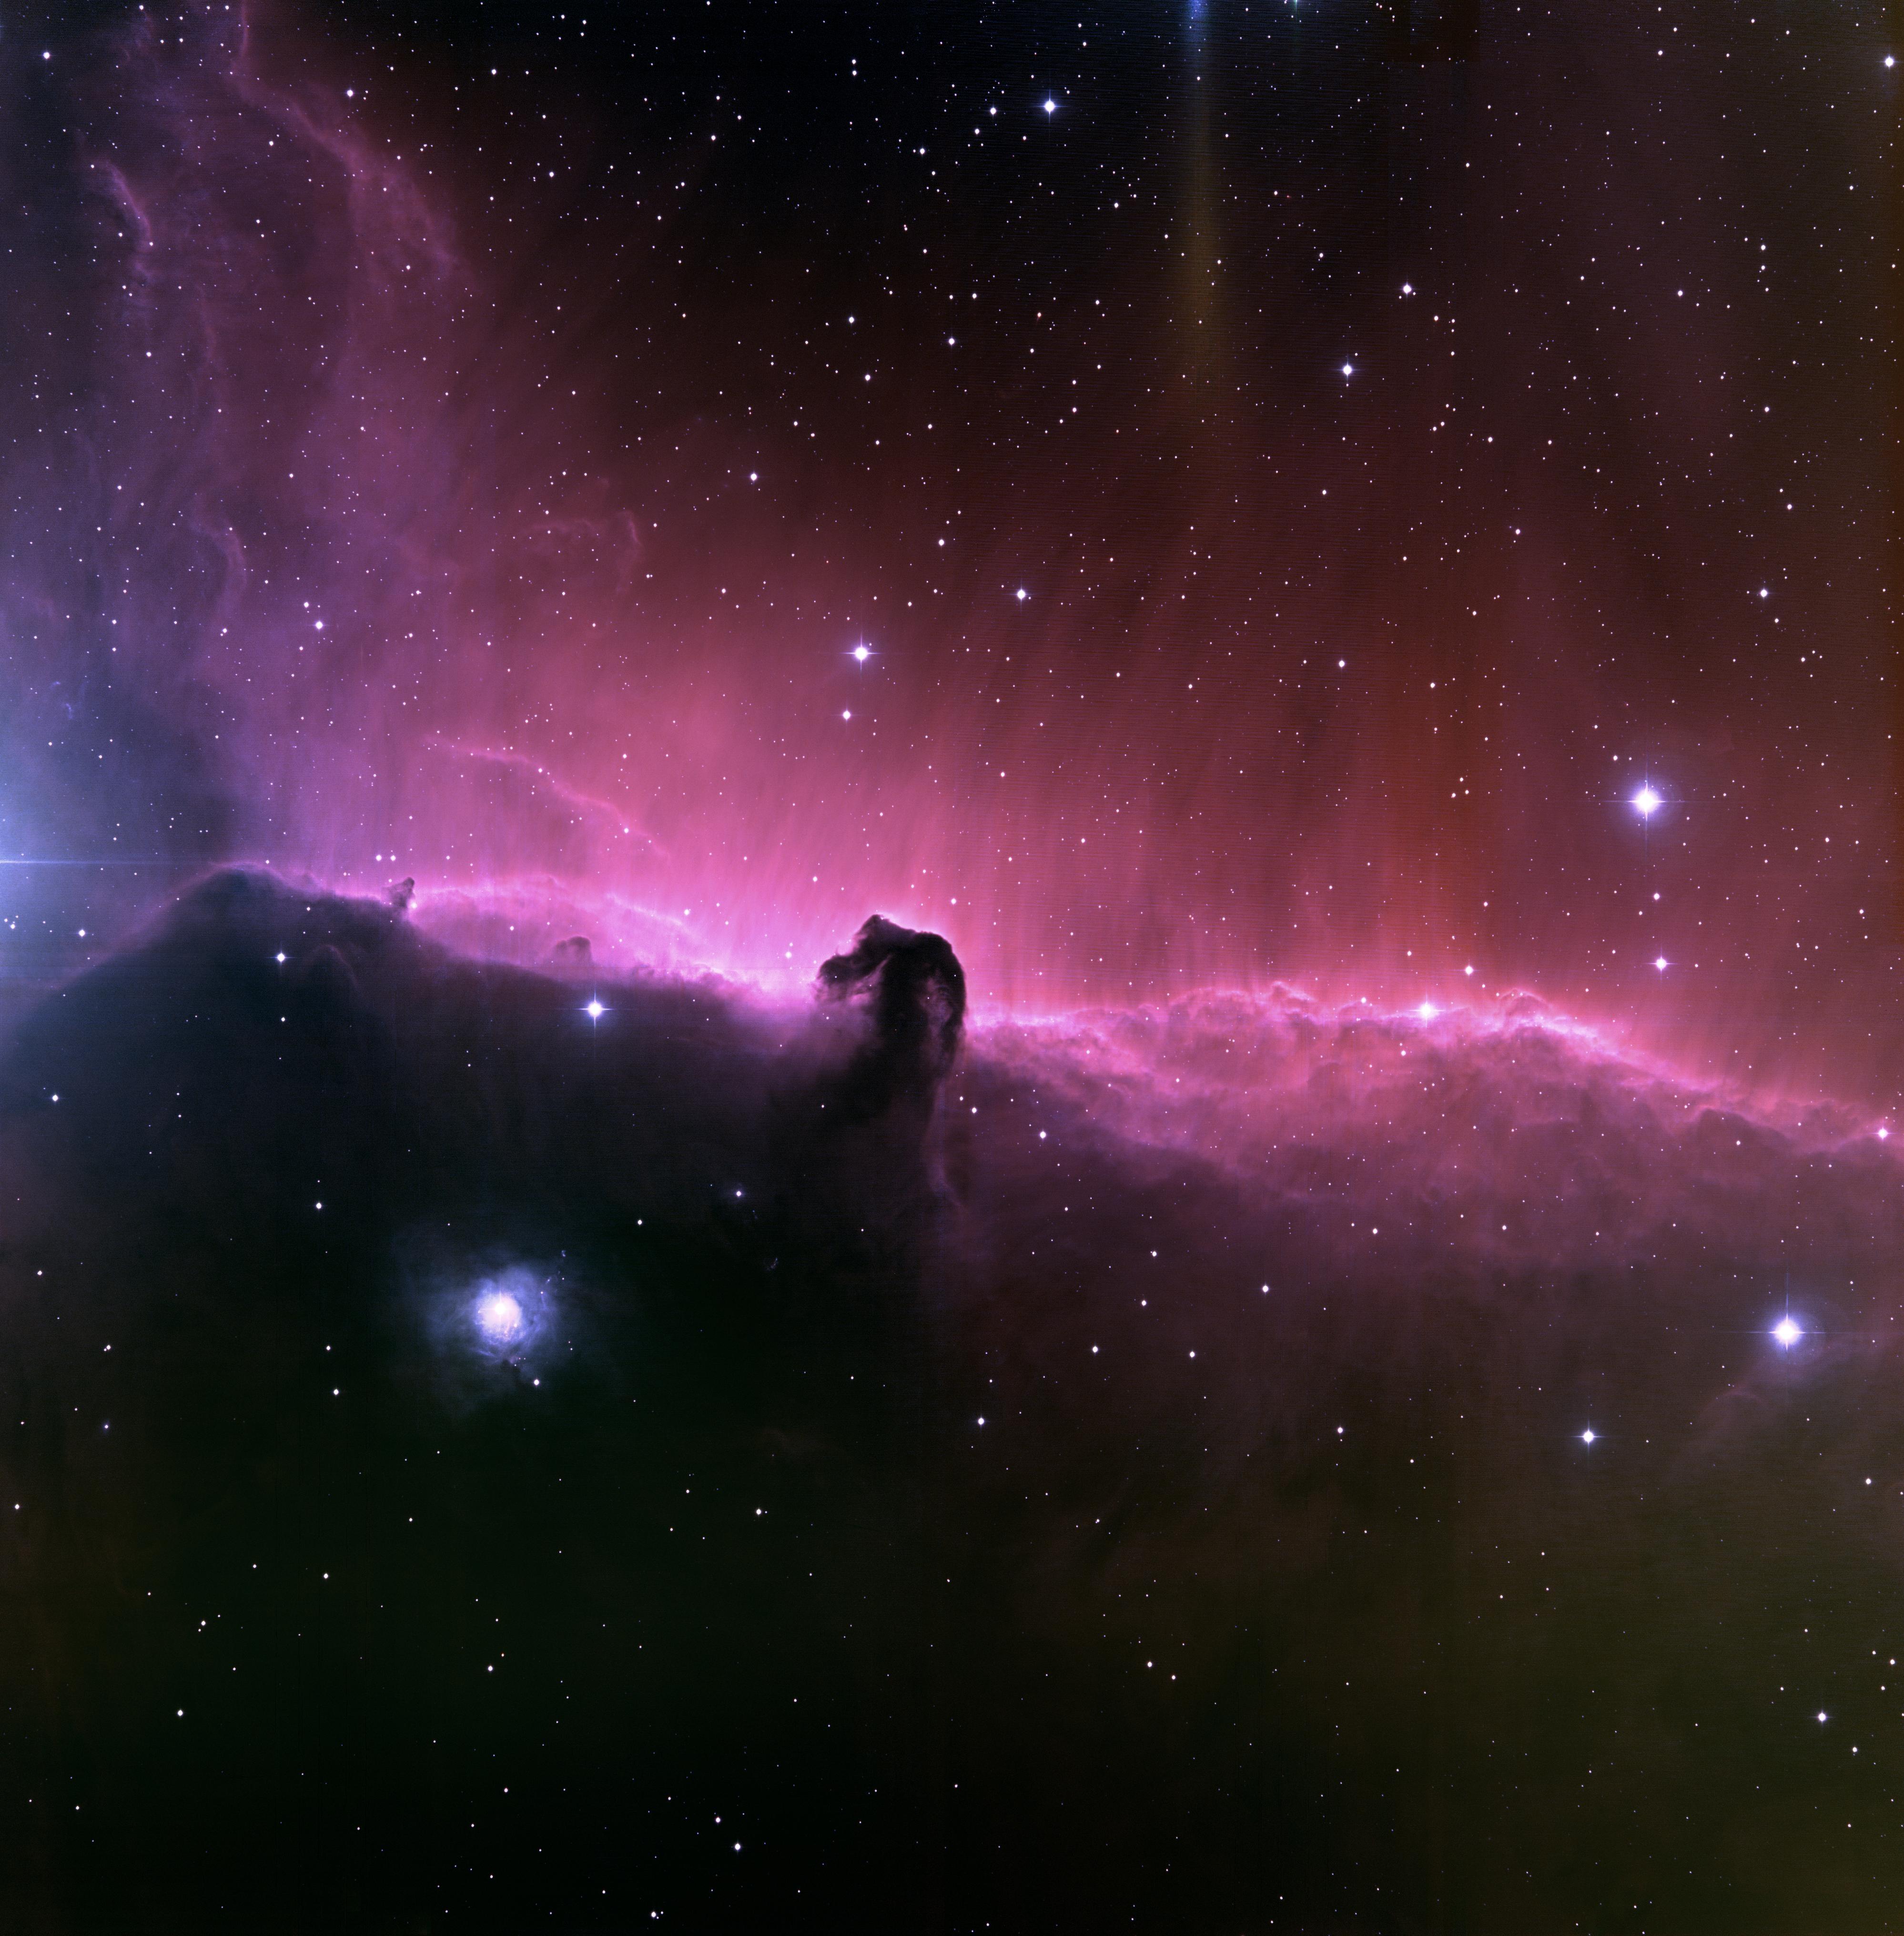 1024 x 576 для ютуба. Туманность конская голова (Barnard 33). Туманность Ориона конская голова. Туманность конская голова Хаббл. Туманности в космосе.